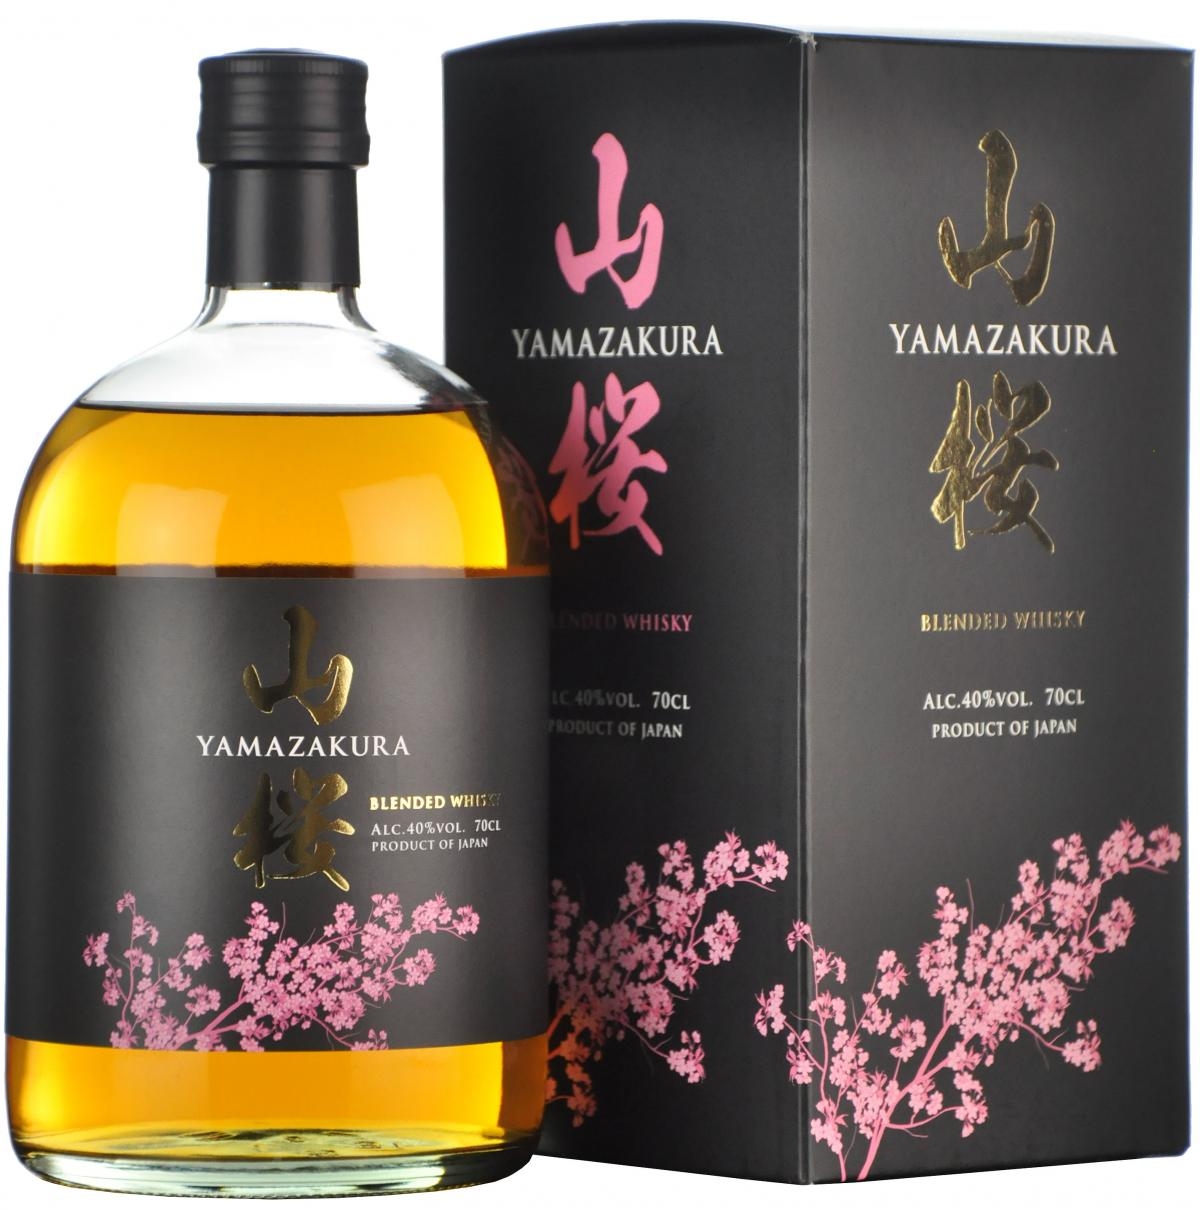 La qualitat d’aquest Whisky Yamazakura va combinar l’aproximació dels cims amb aquesta expressió. No pot ser del tot un destí si "Yama" significa "muntanya" a Japonès.